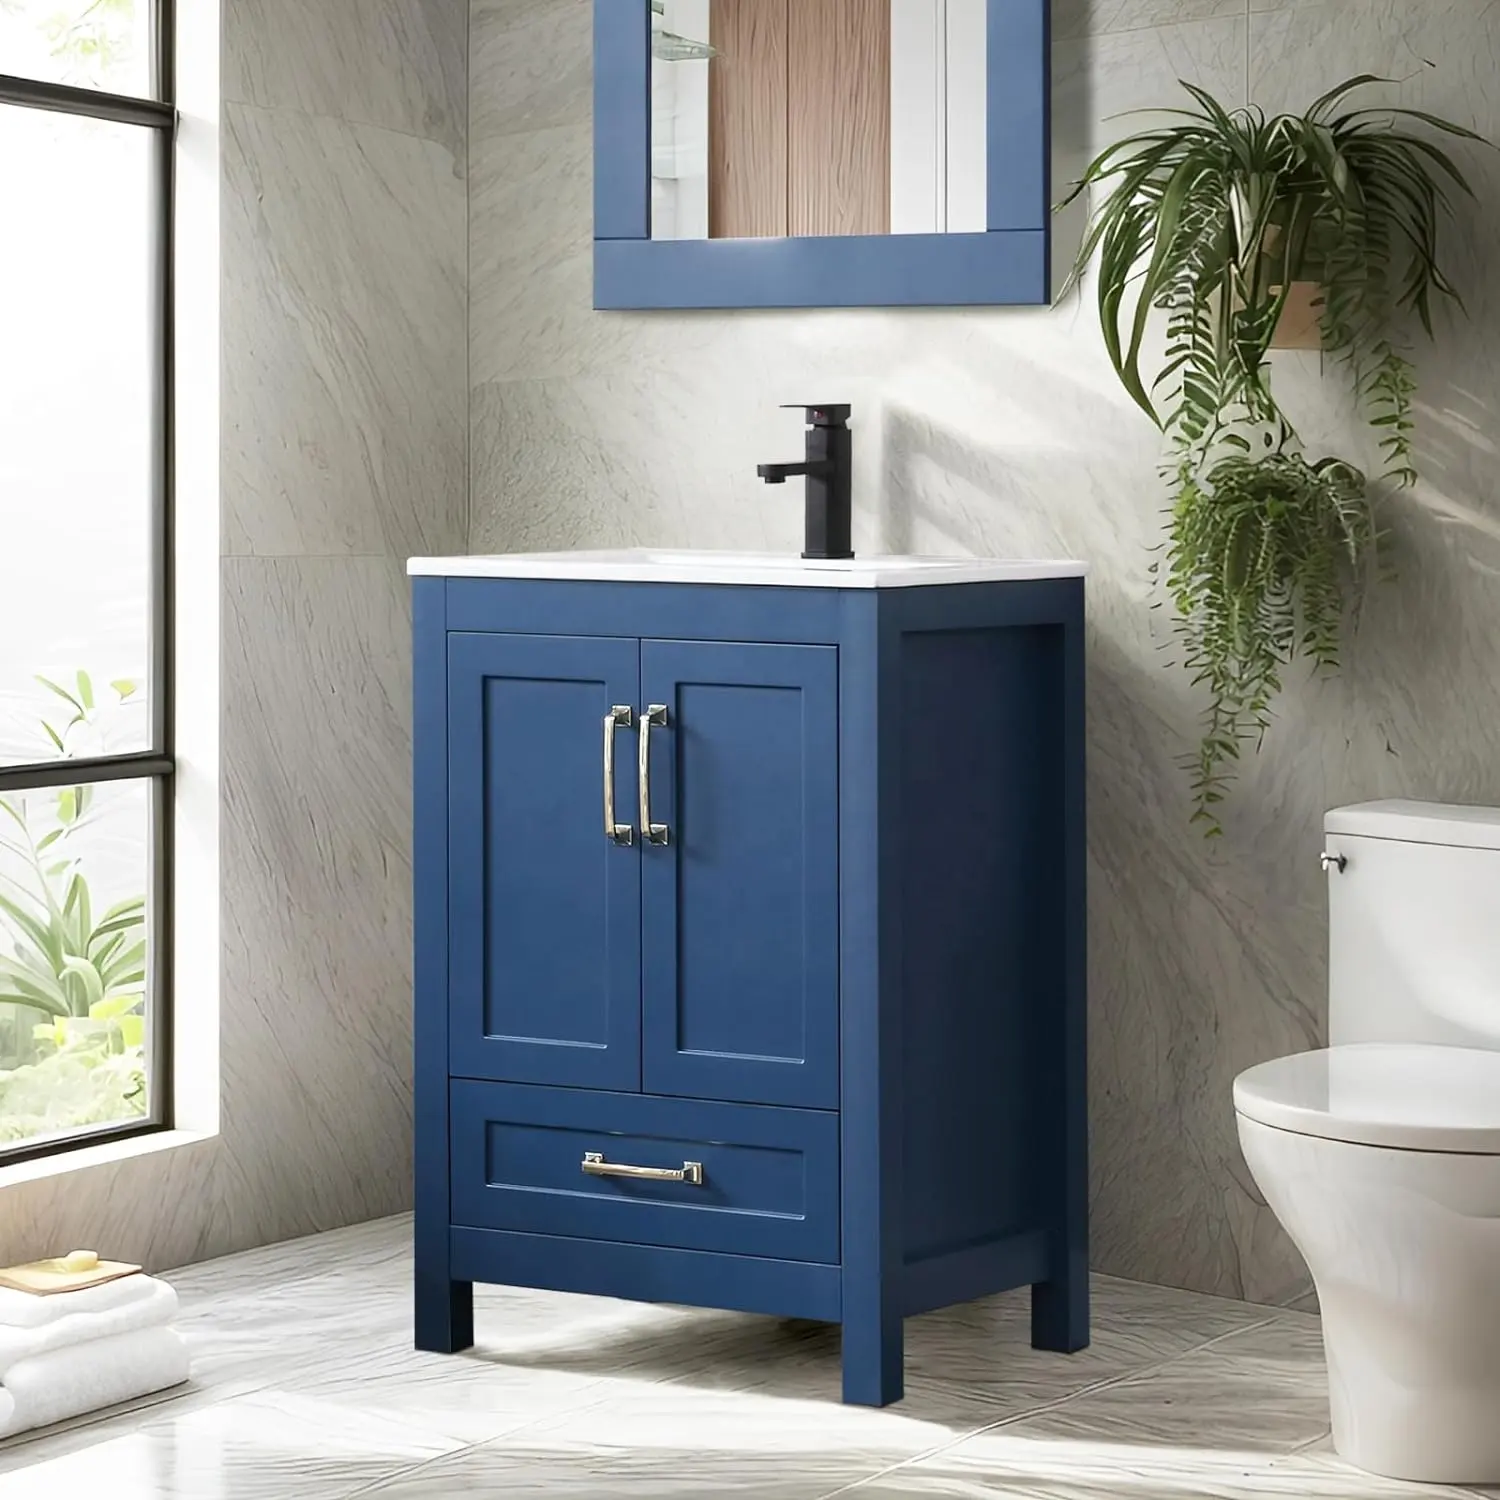 Tocador de baño independiente pintado azul de 24 ", gabinetes de tocador de baño modernos, tocador de baño de 24 pulgadas con fregadero